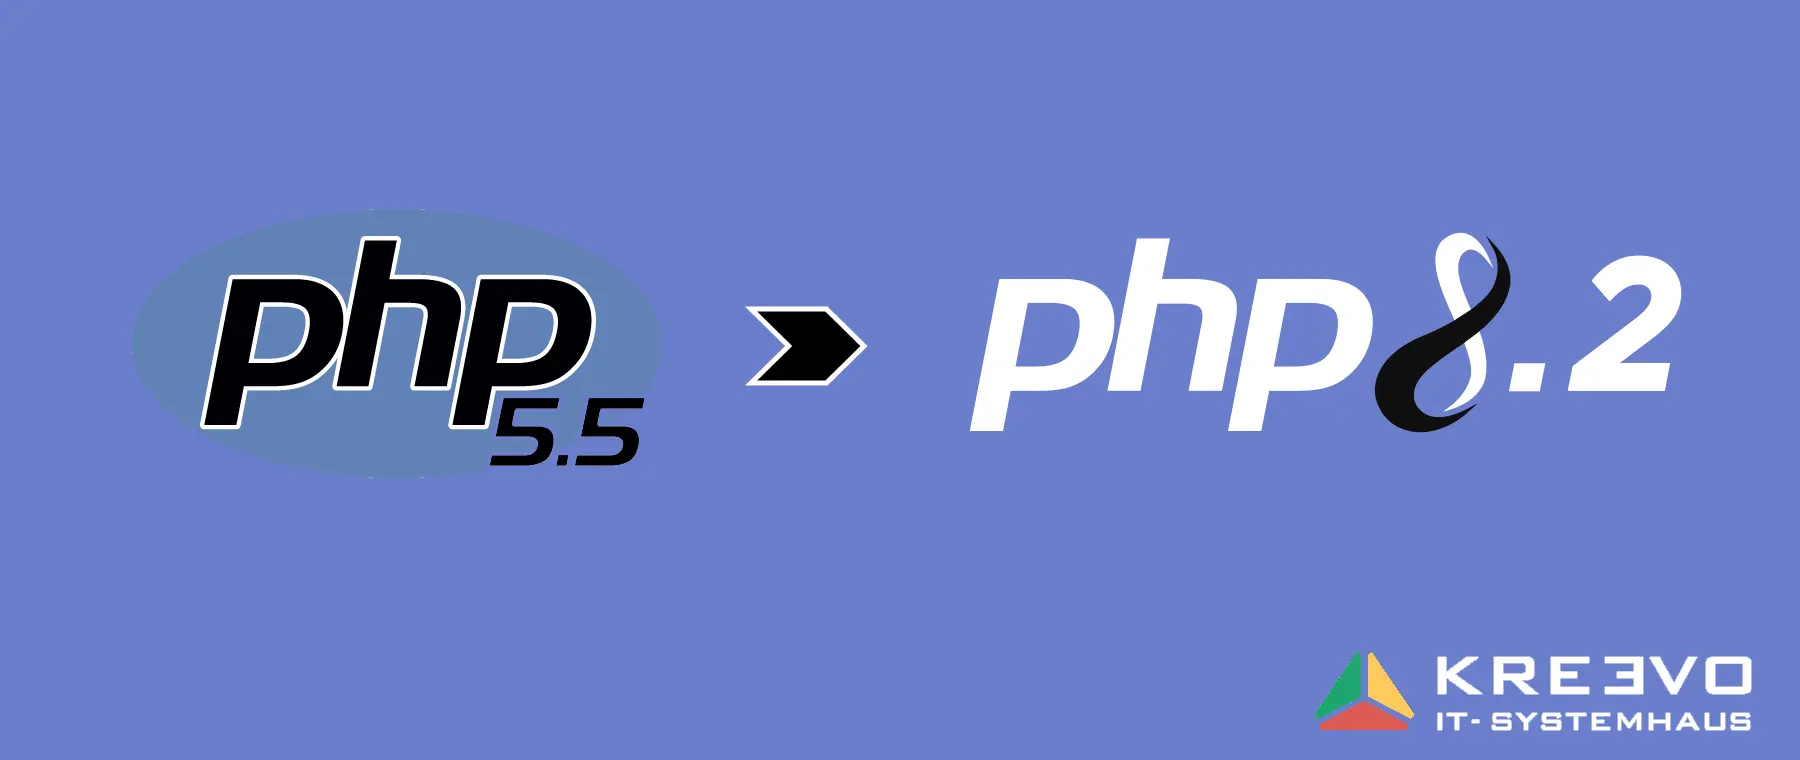 Steigern sie die Leistung & Funktionalität mit einem Upgrade auf PHP 8.2